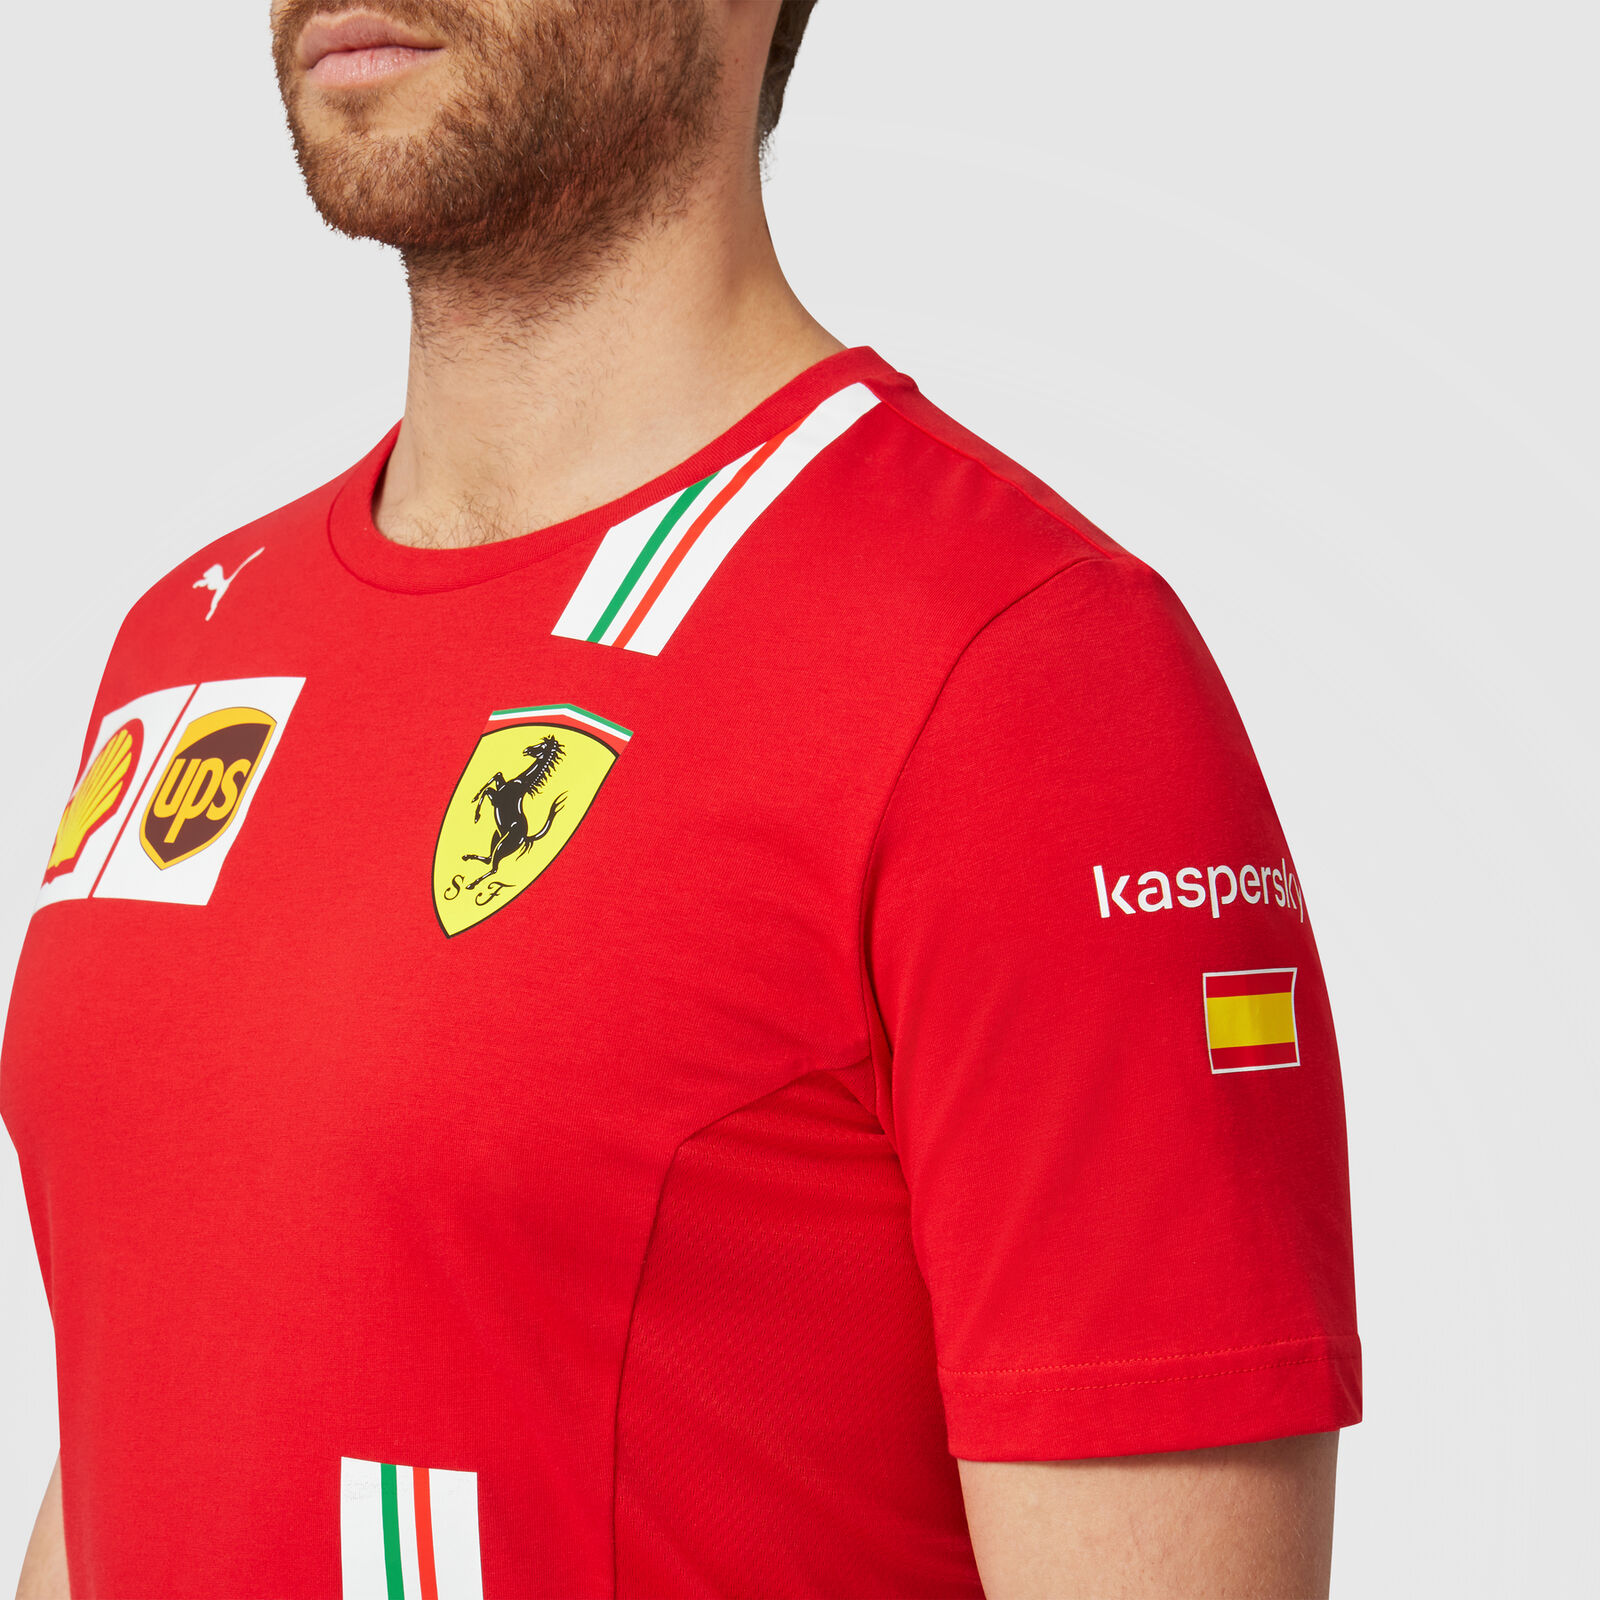 Camiseta del equipo Scuderia Ferrari 2021